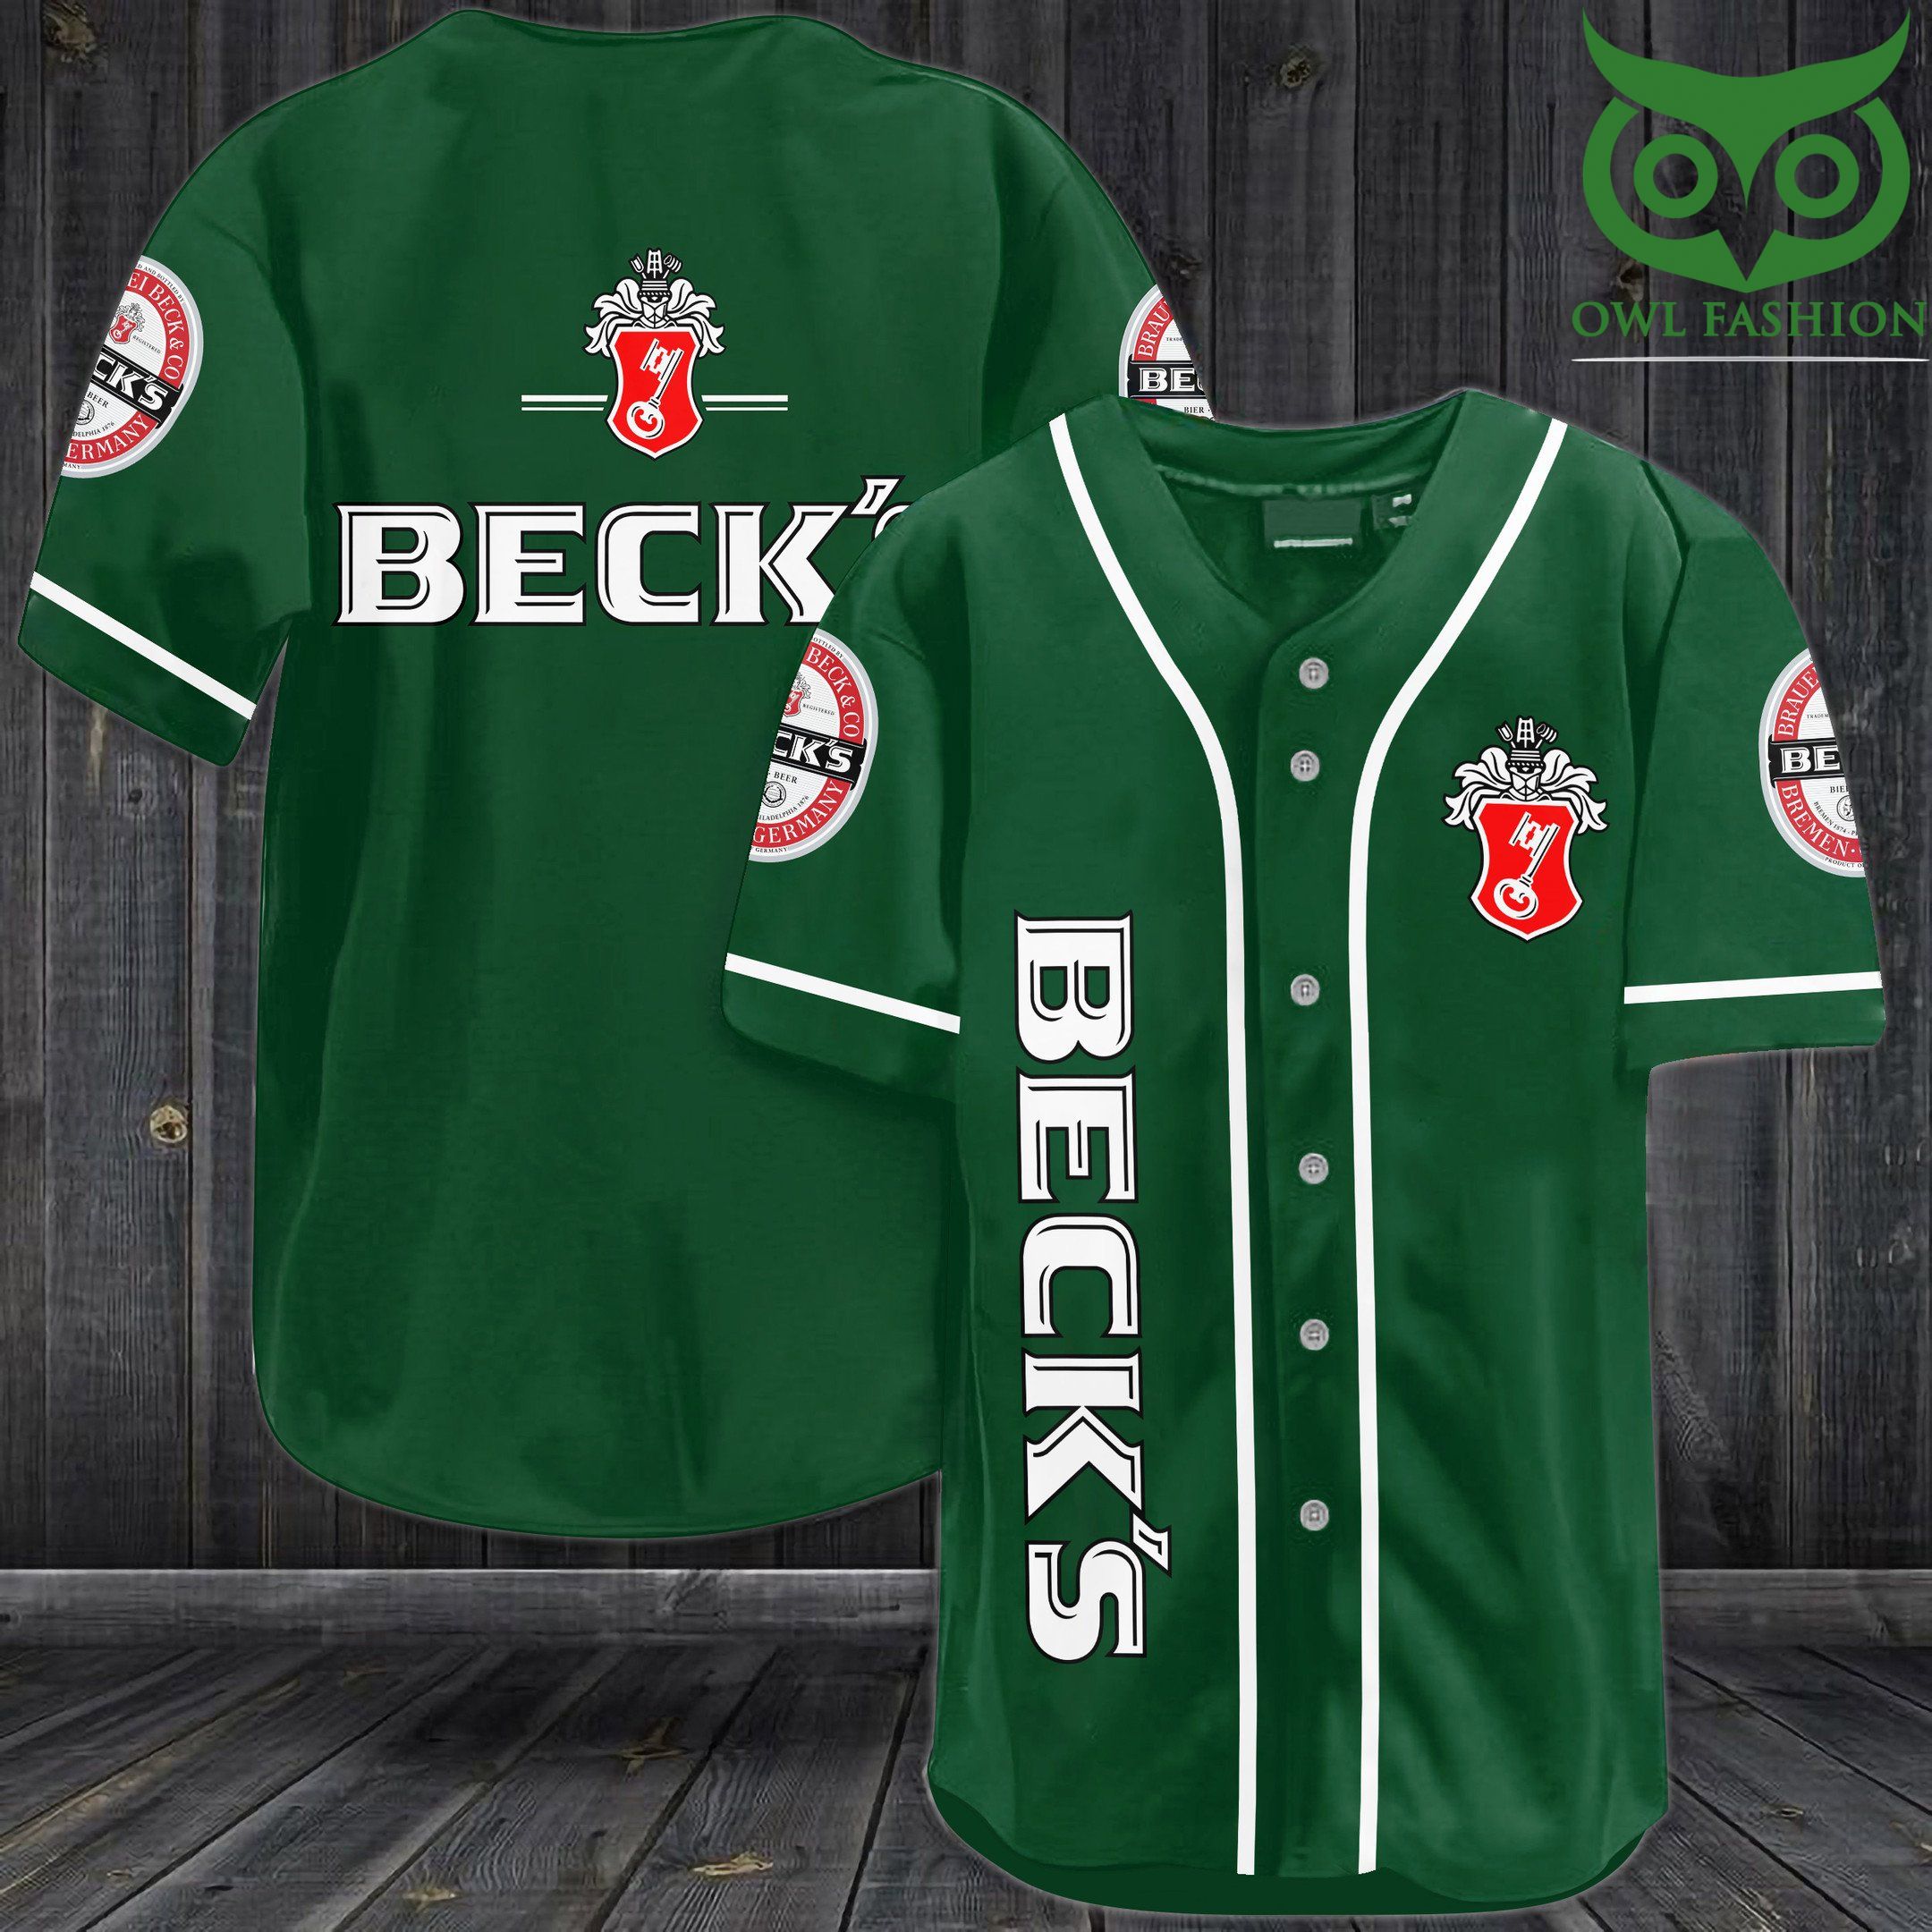 Beck dark green Baseball Jersey Shirt